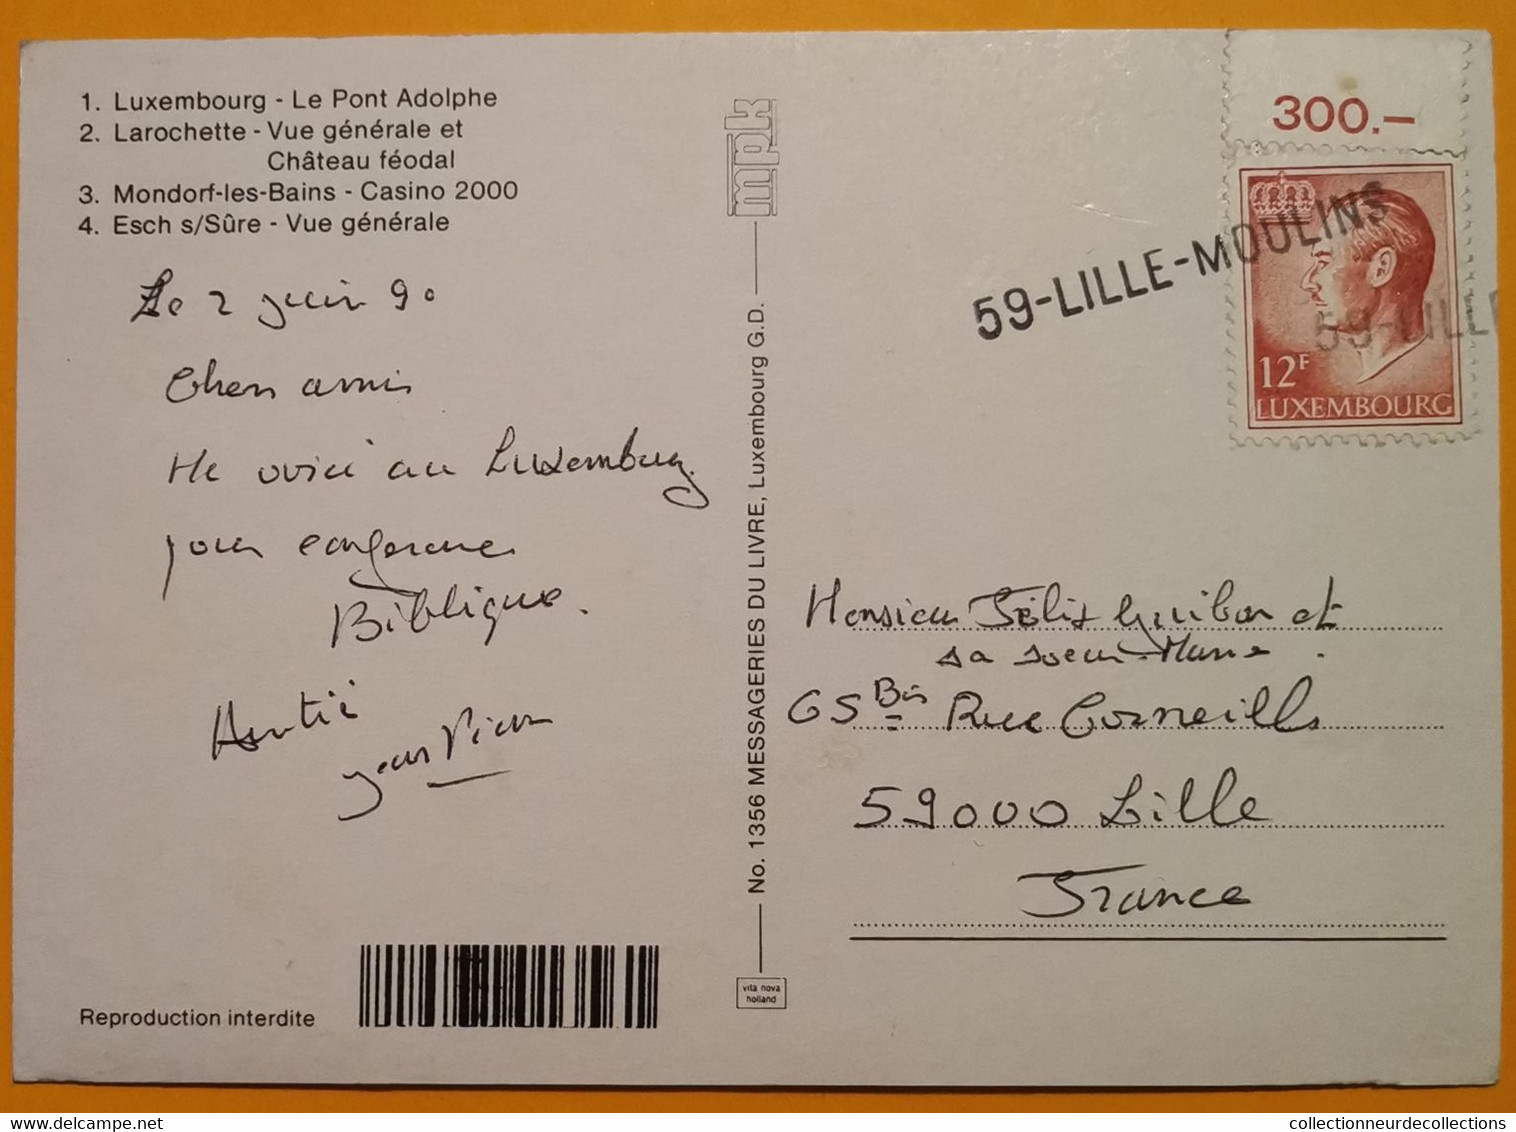 Superbe GRIFFE Linéaire 59-LILLE-MOULINS De 1990 Sur Cpm Luxembourg > France - Briefe U. Dokumente